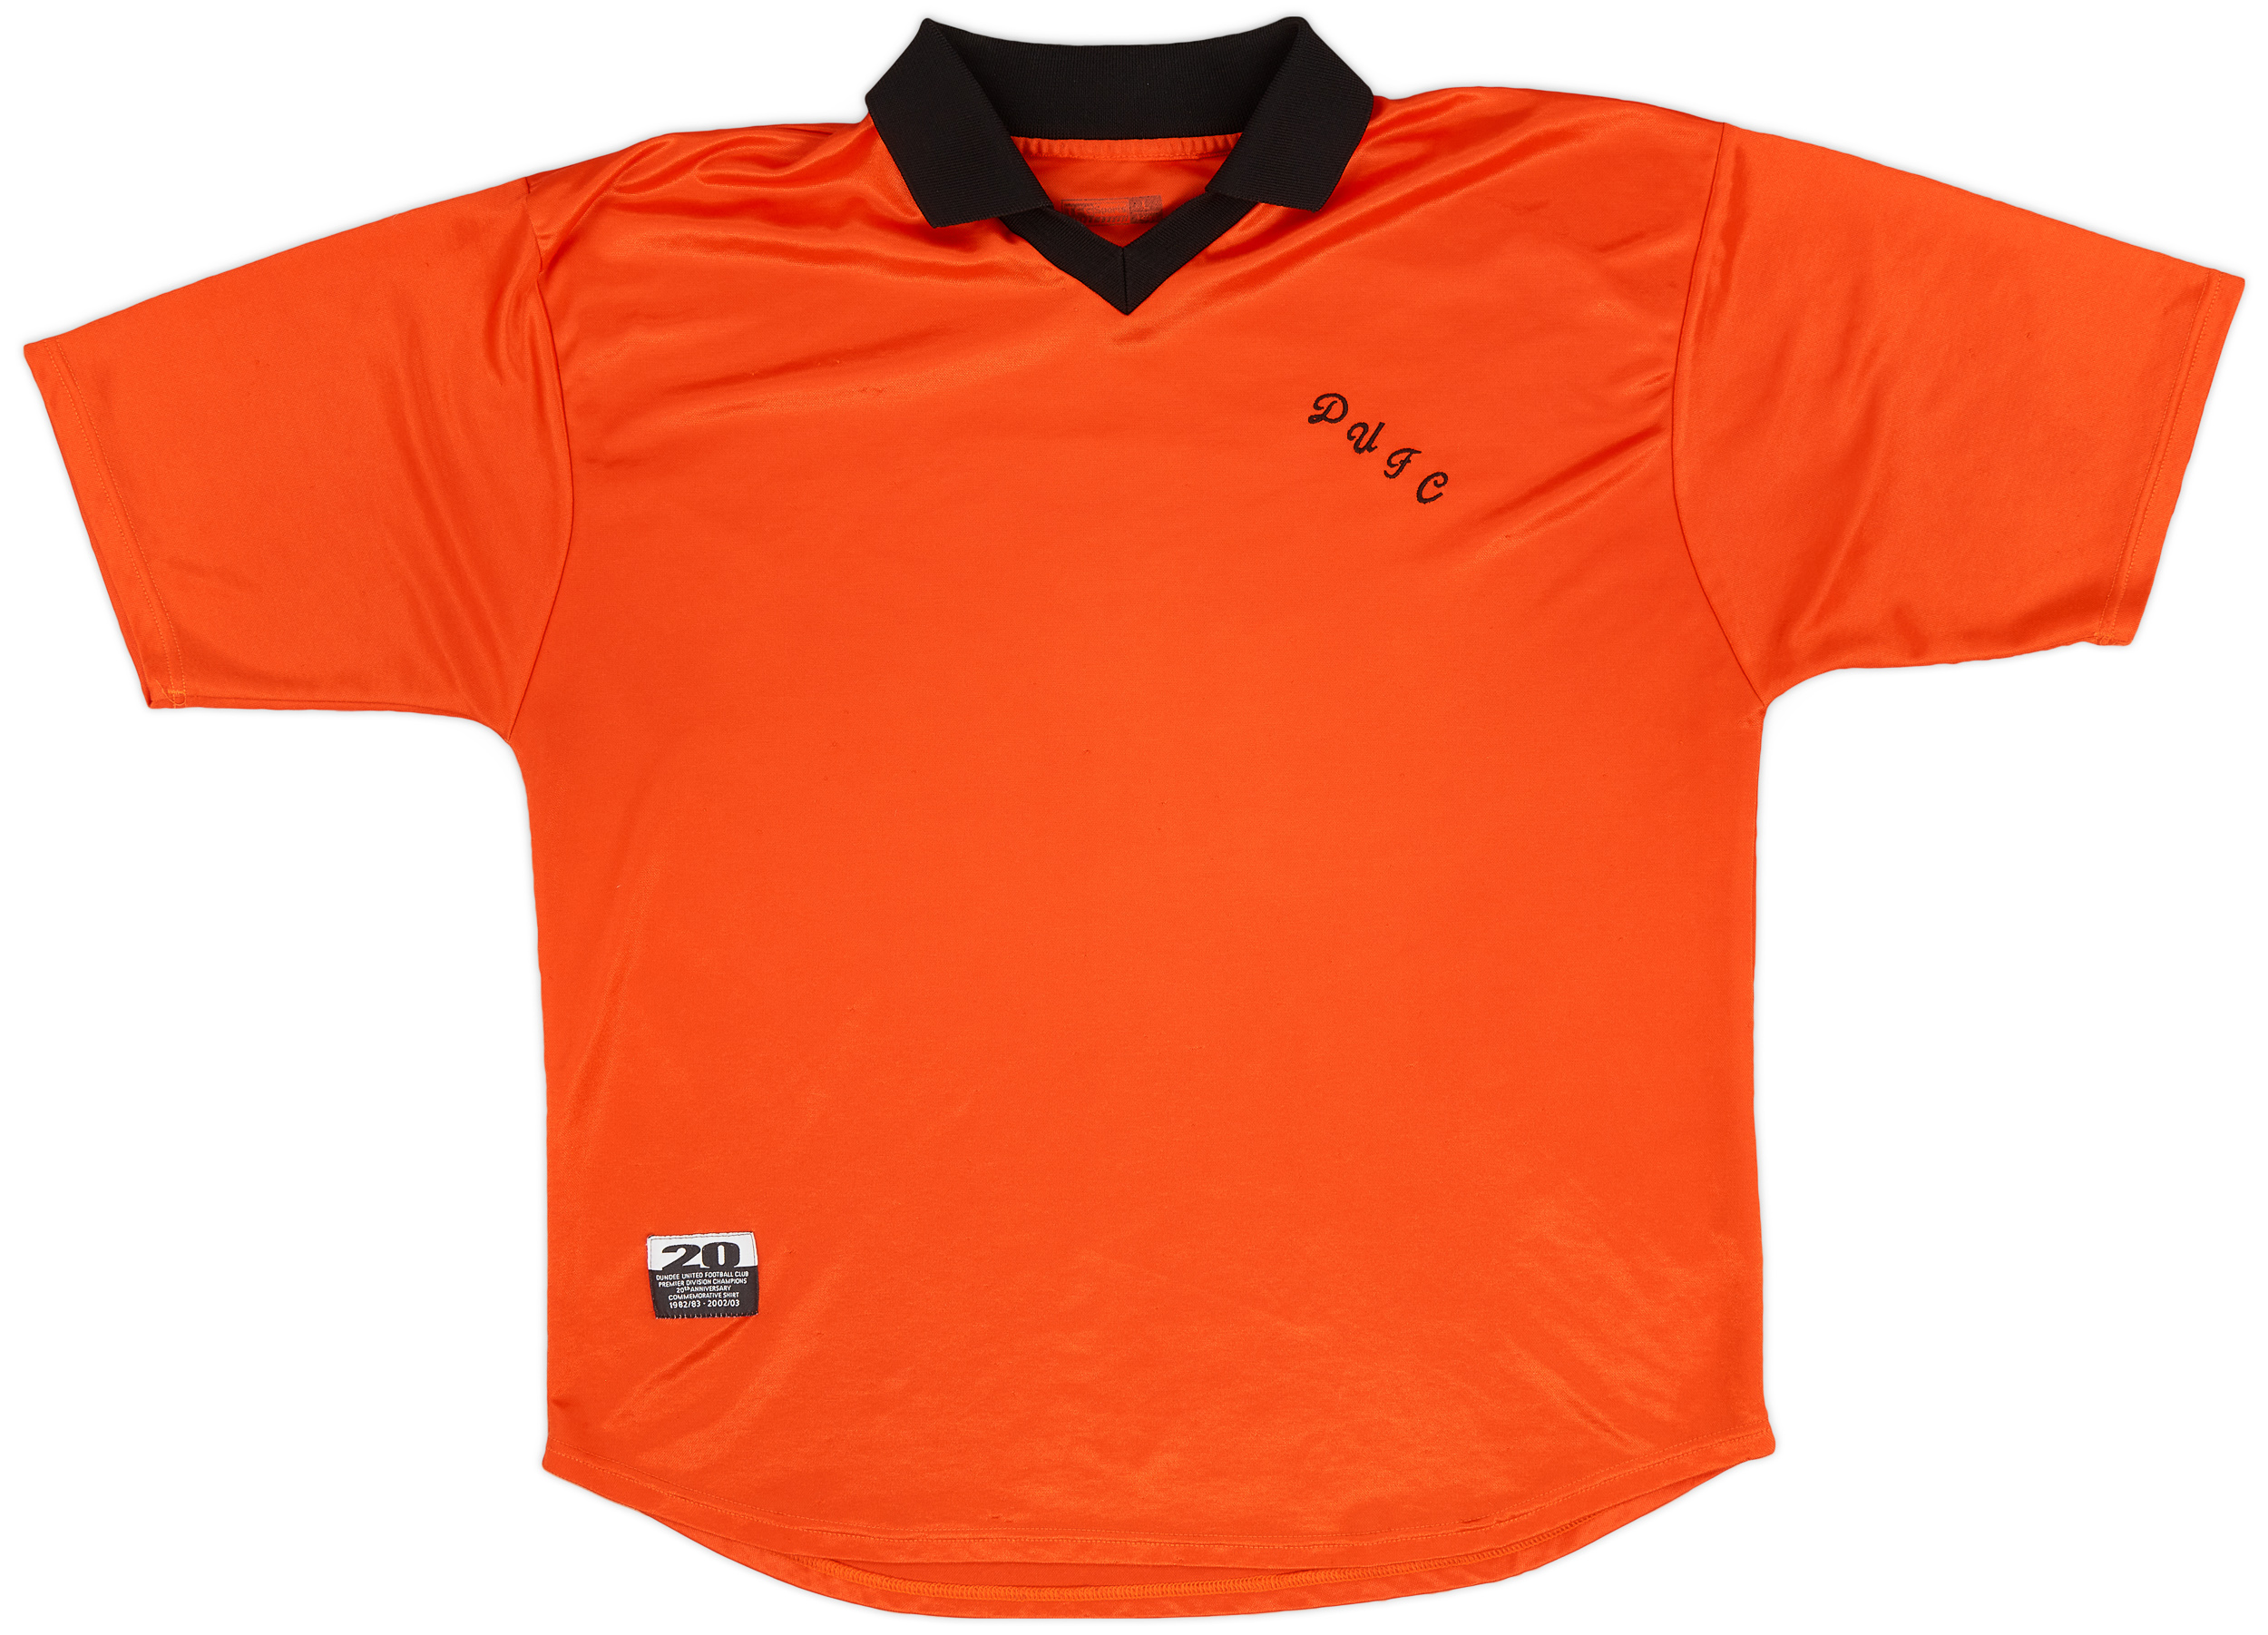 2002-03 Dundee United Anniversary Shirt - 8/10 - ()